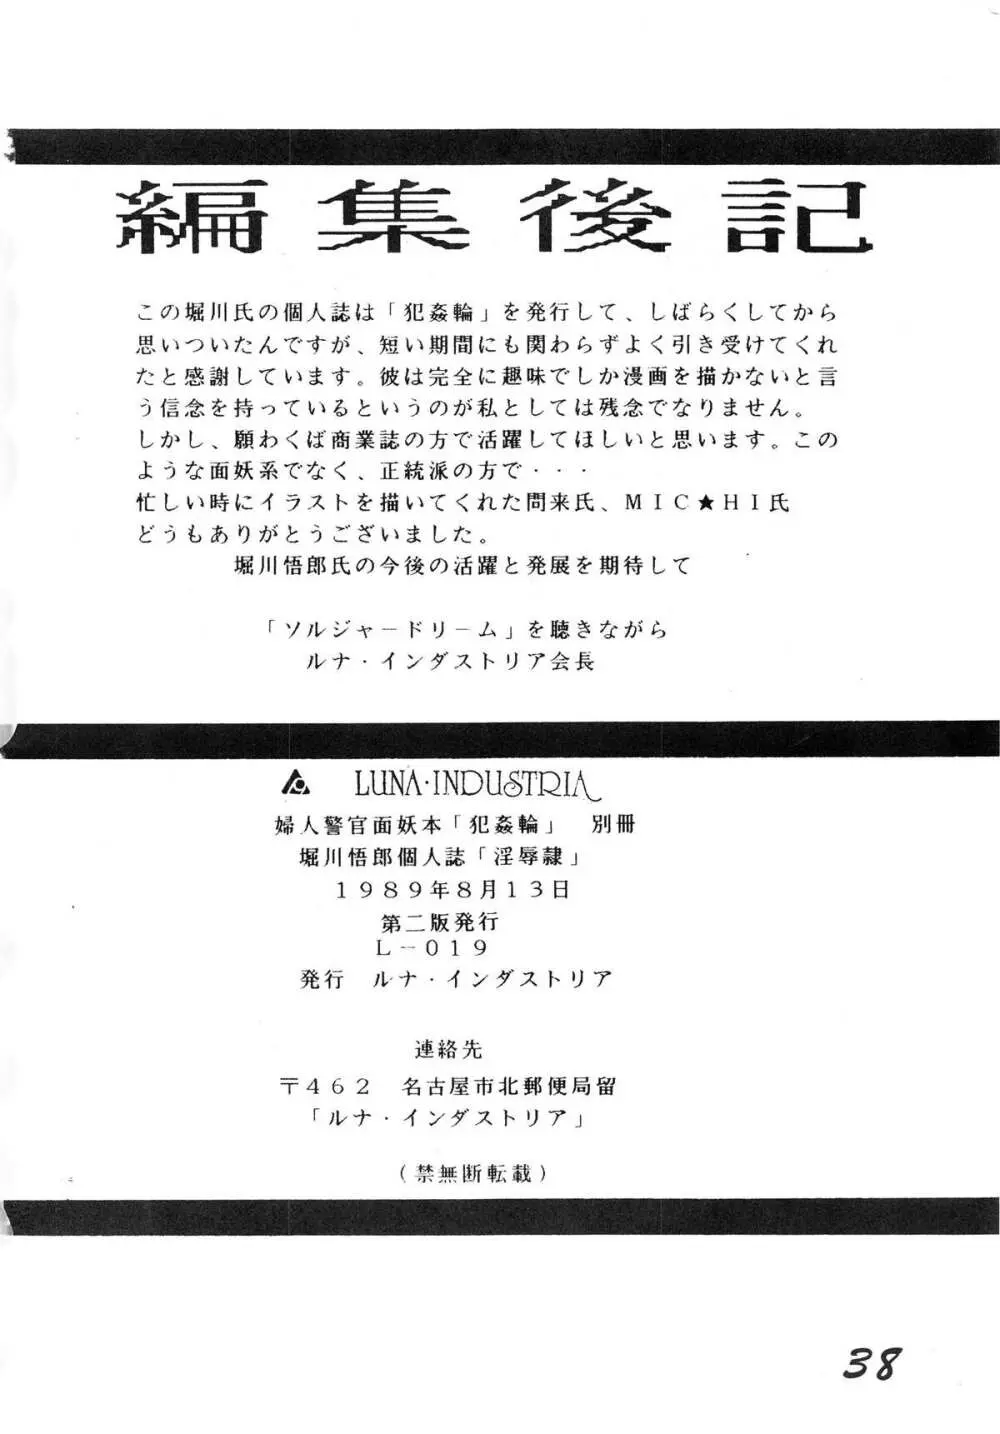 淫辱隷 -婦人警官面妖本「犯姦輪」別冊- 38ページ